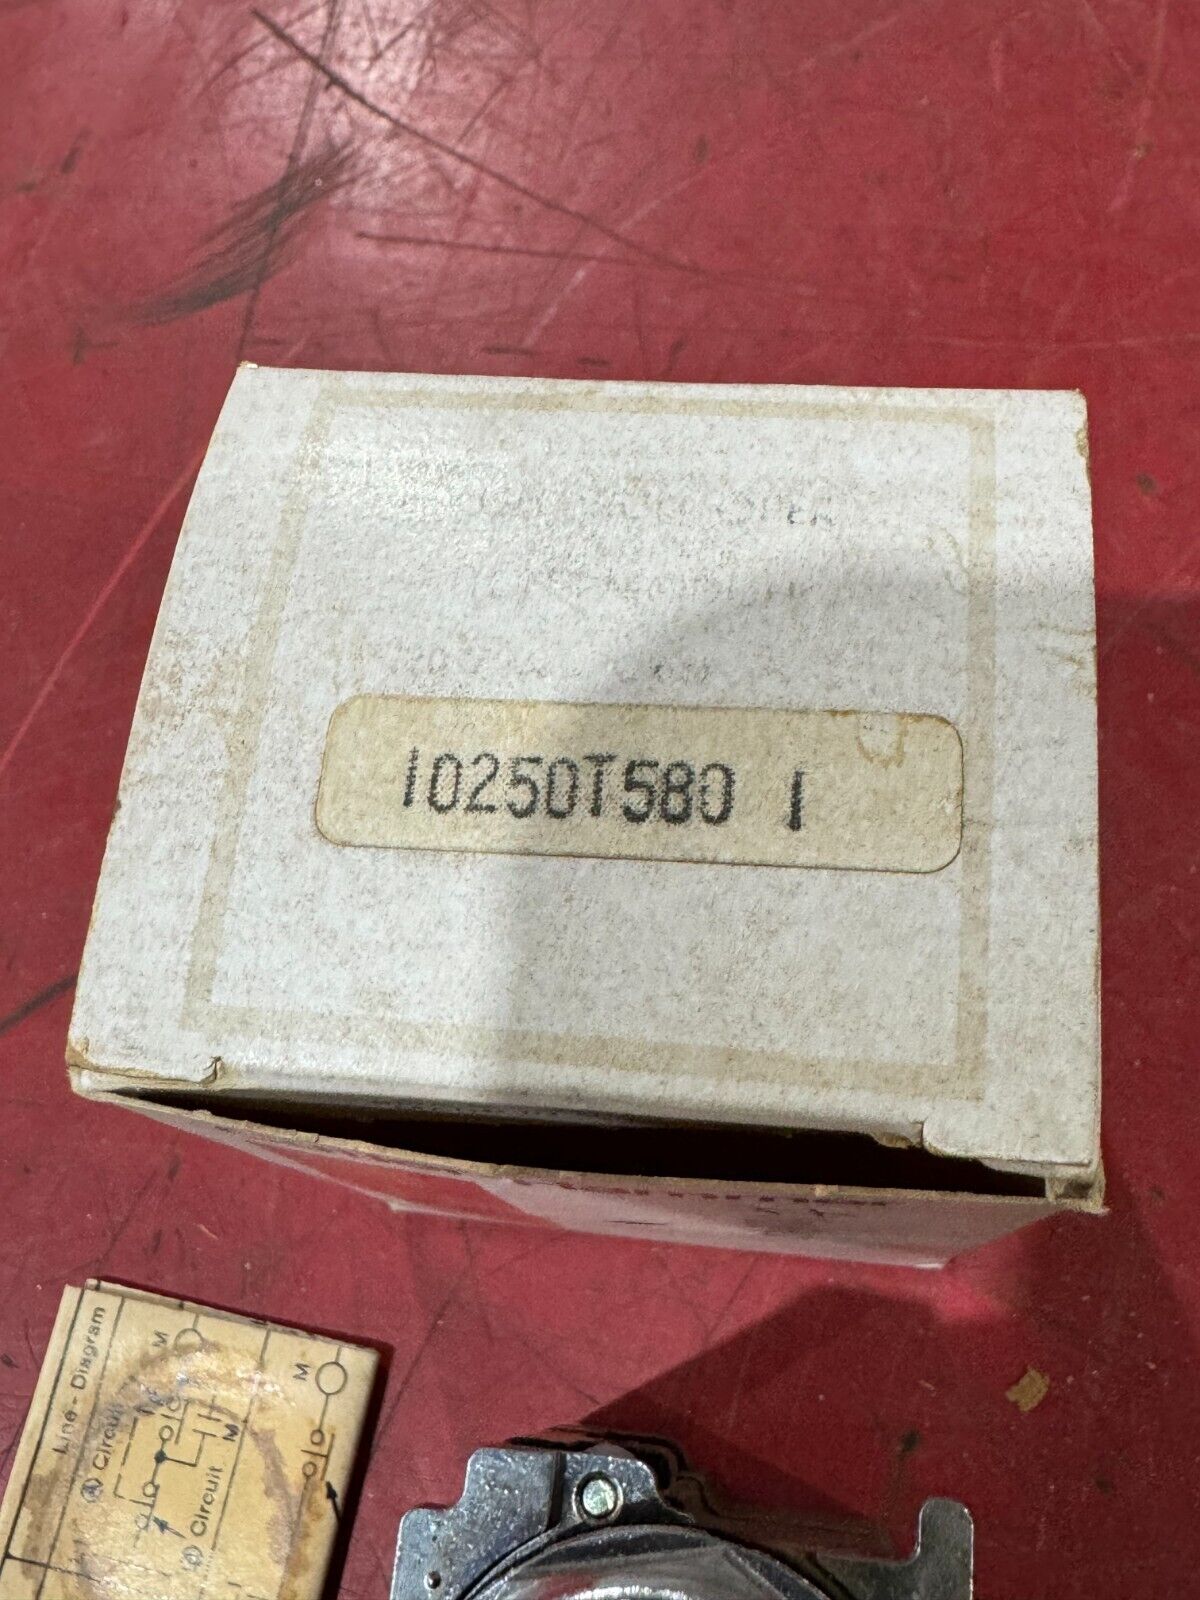 NEW IN BOX CUTLER HAMMER PUSH BUTTON MODULE 10250T580